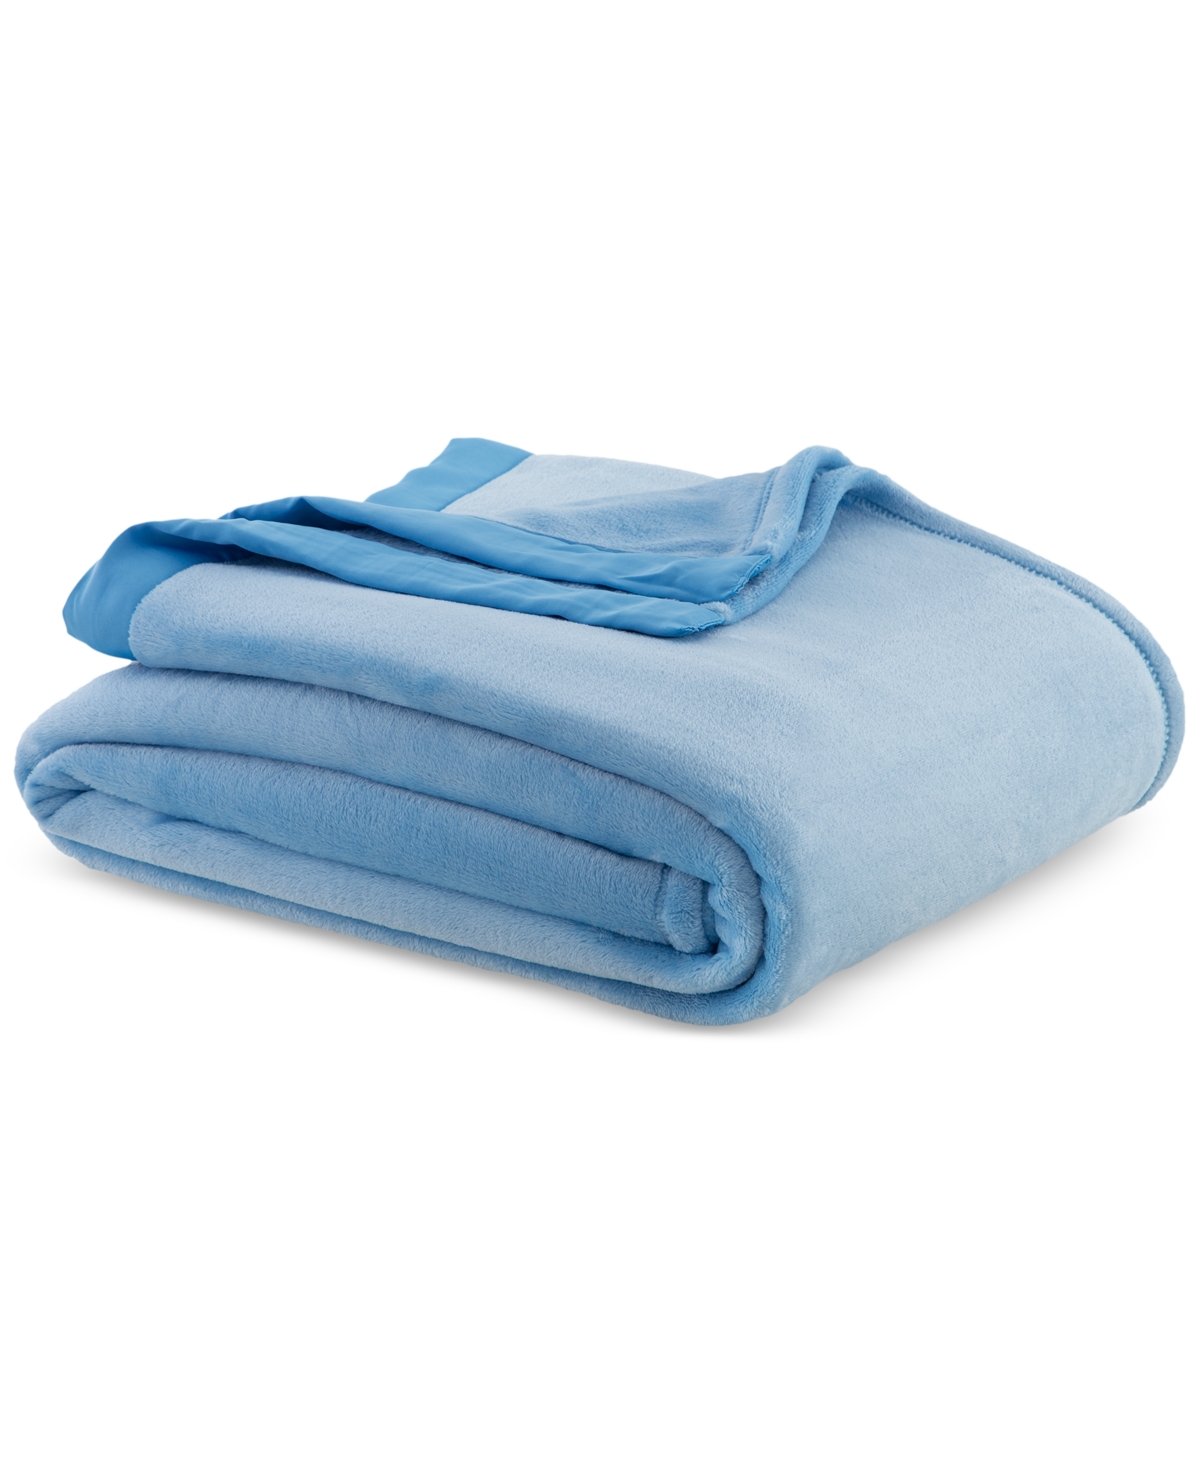 Berkshire Classic Velvety Plush Blanket, Full/queen, Created For Macy's In Blue Plate